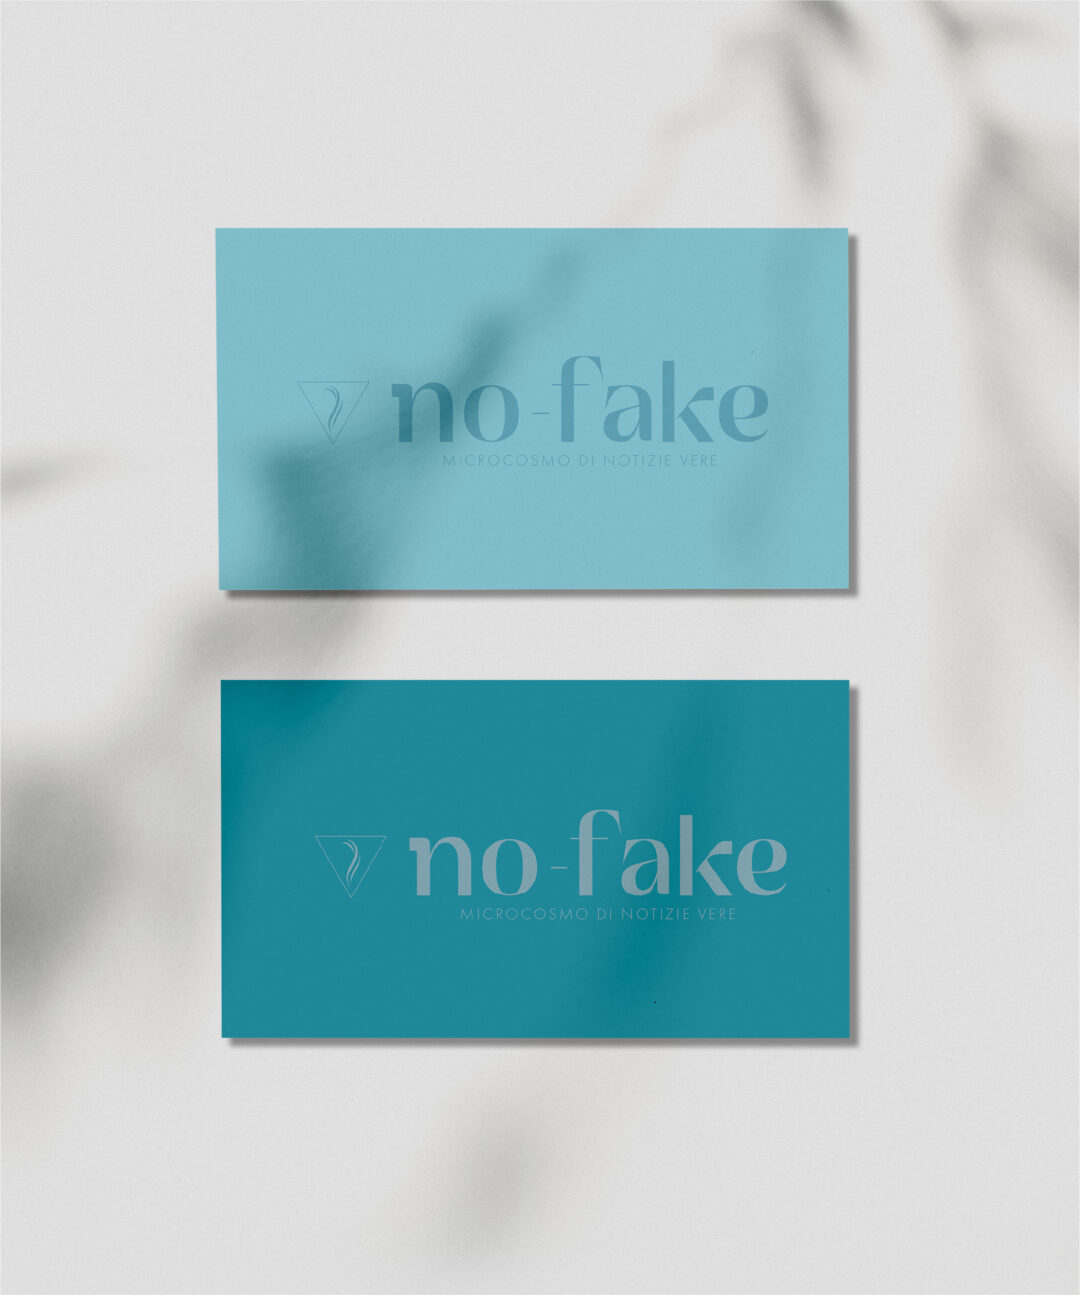 No-fake